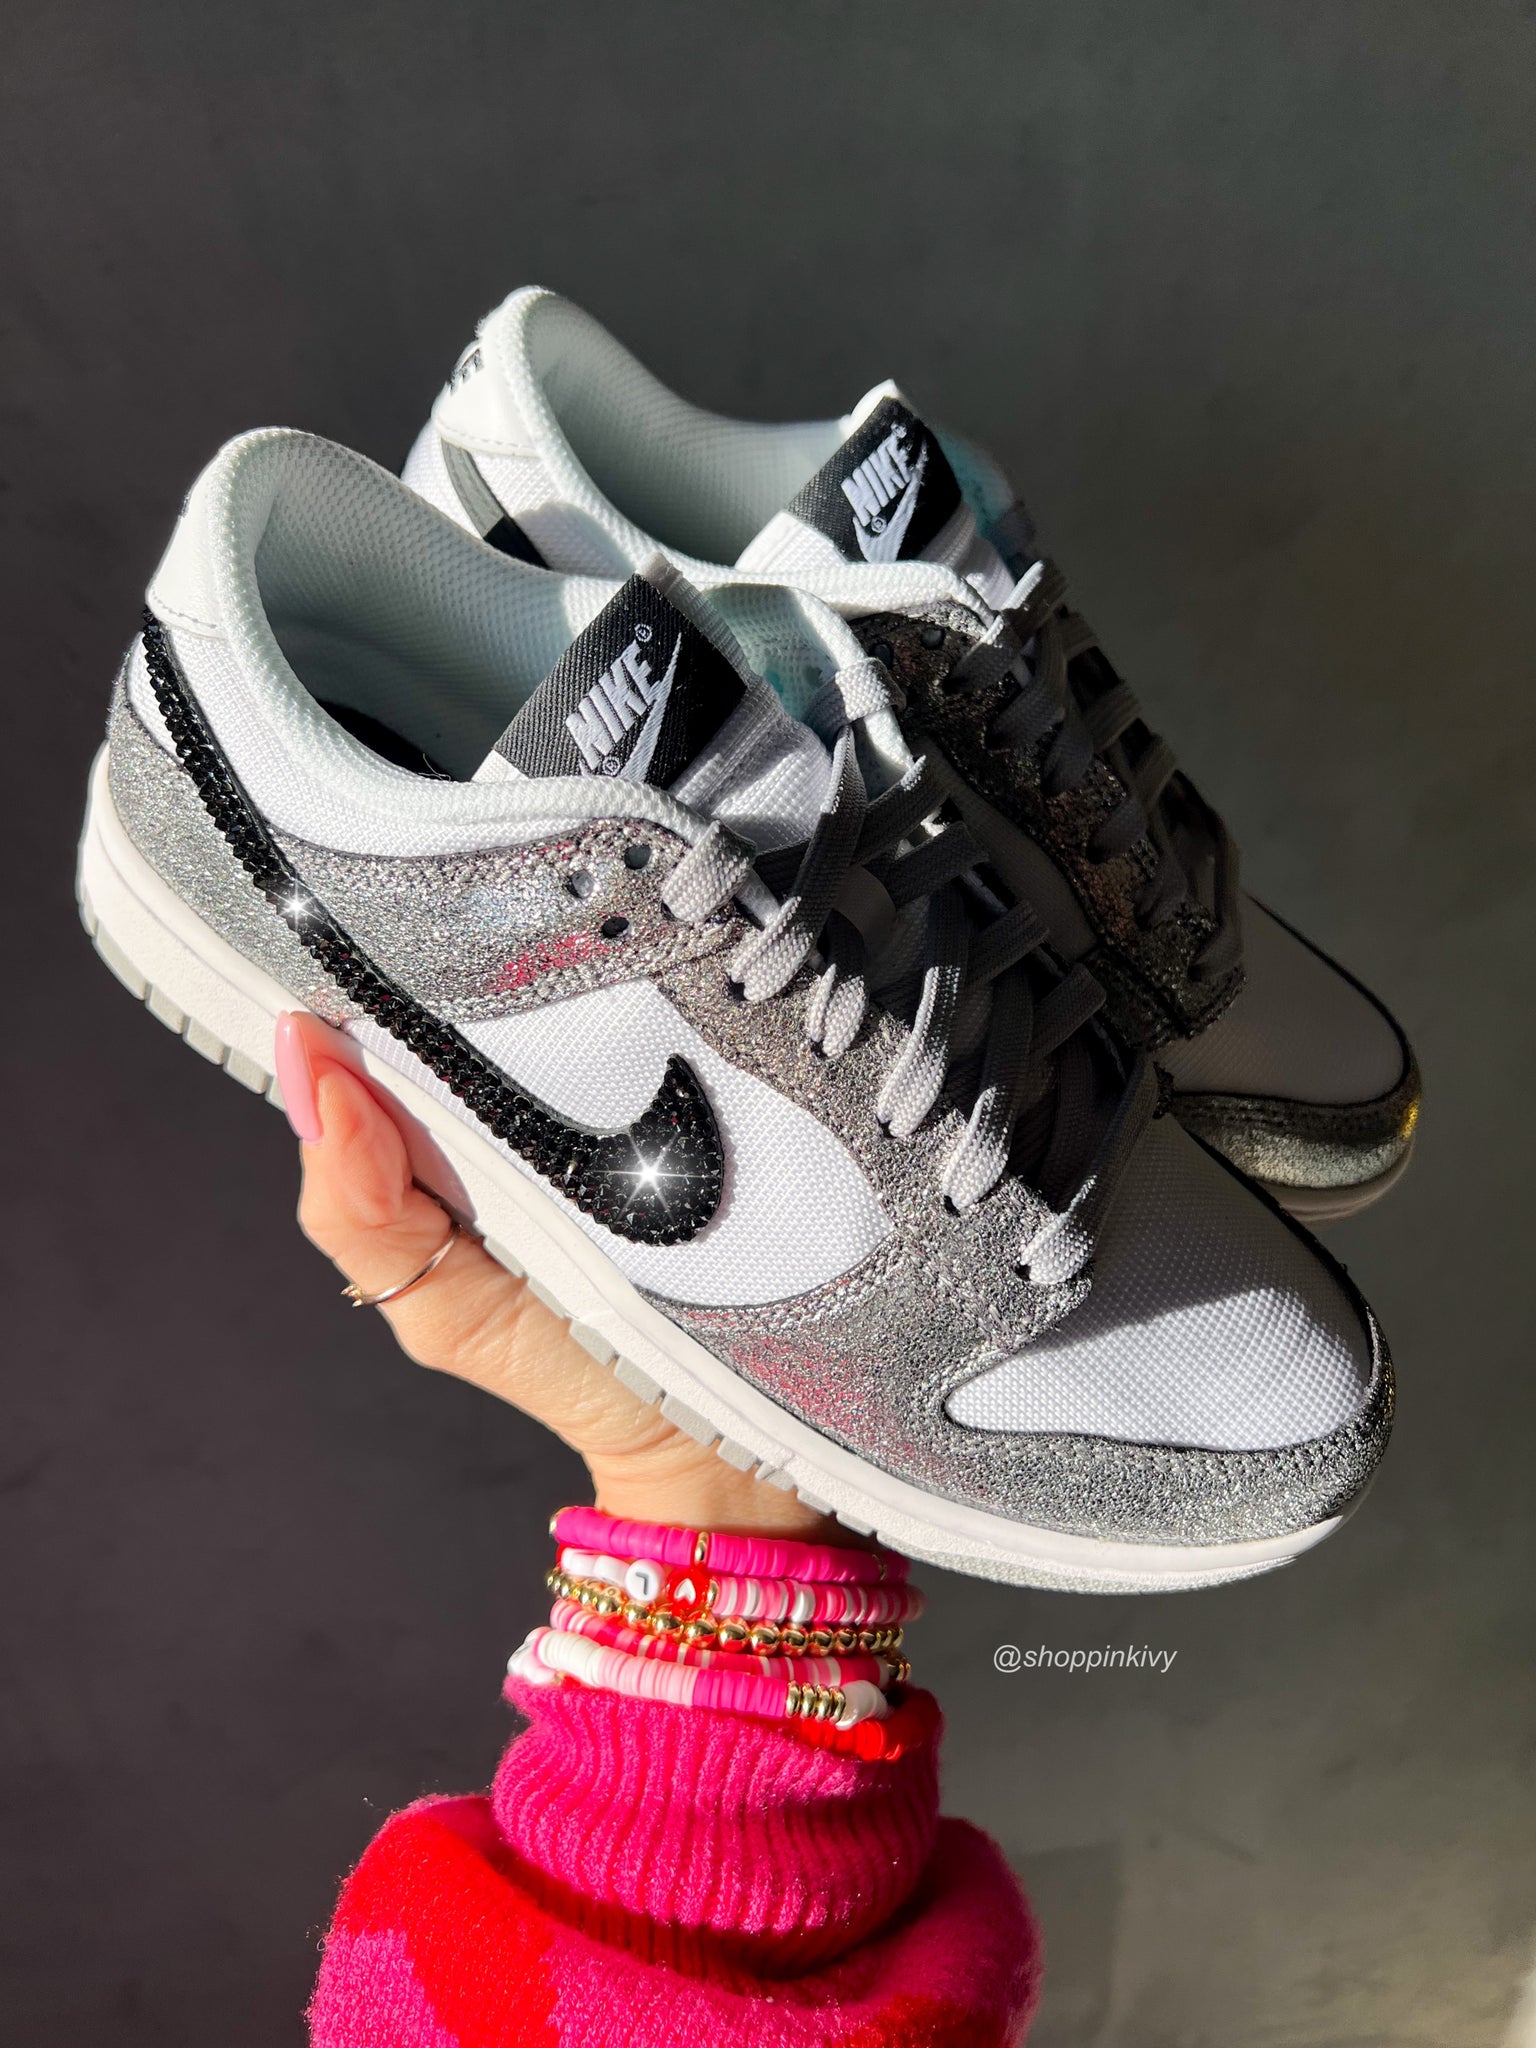 Rare Metallic Swarovski Womens Nike Dunk Shoes Pink Ivy